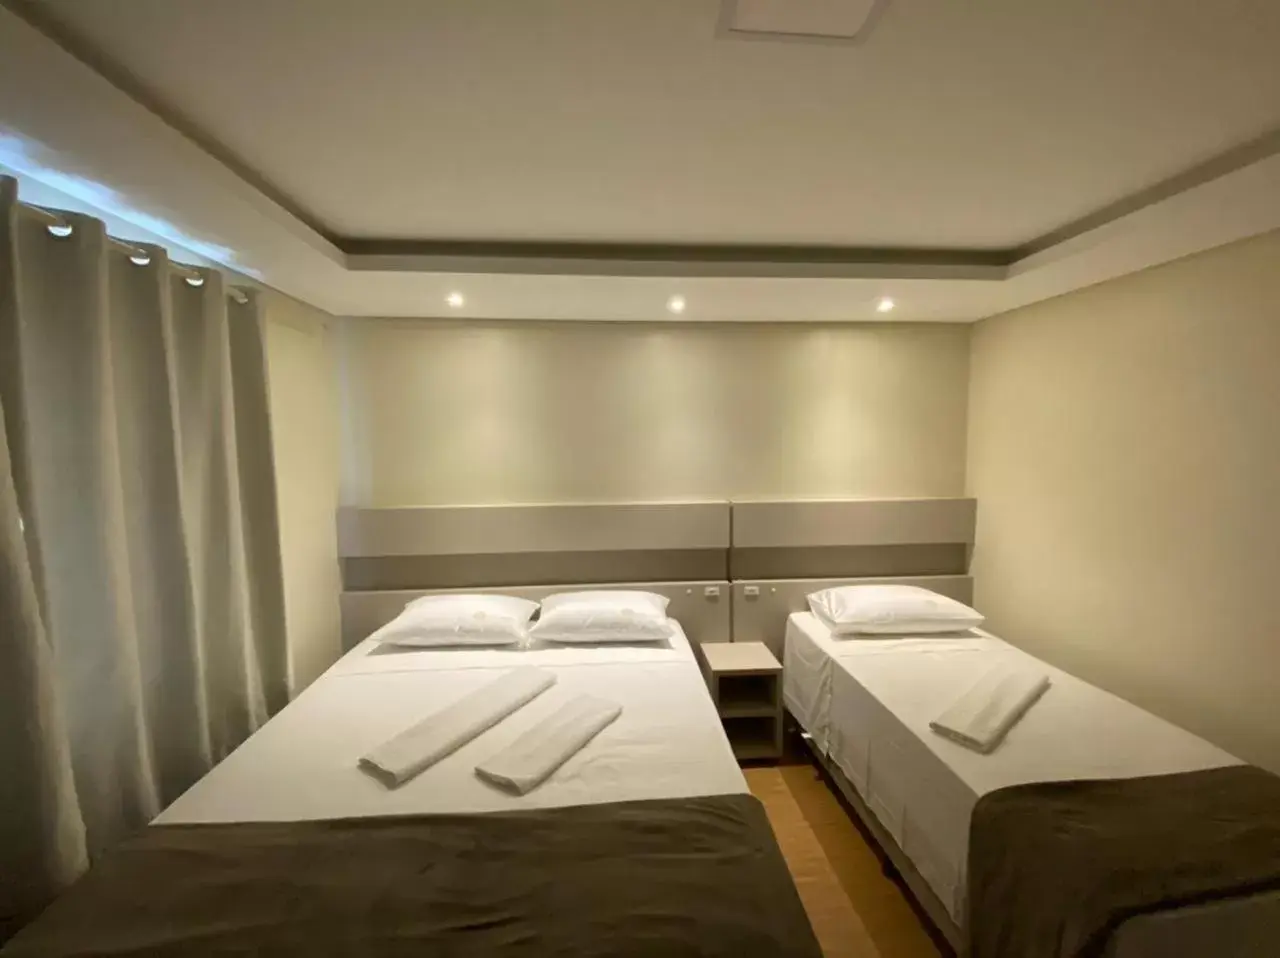 Bed in Hotel Joaçaba